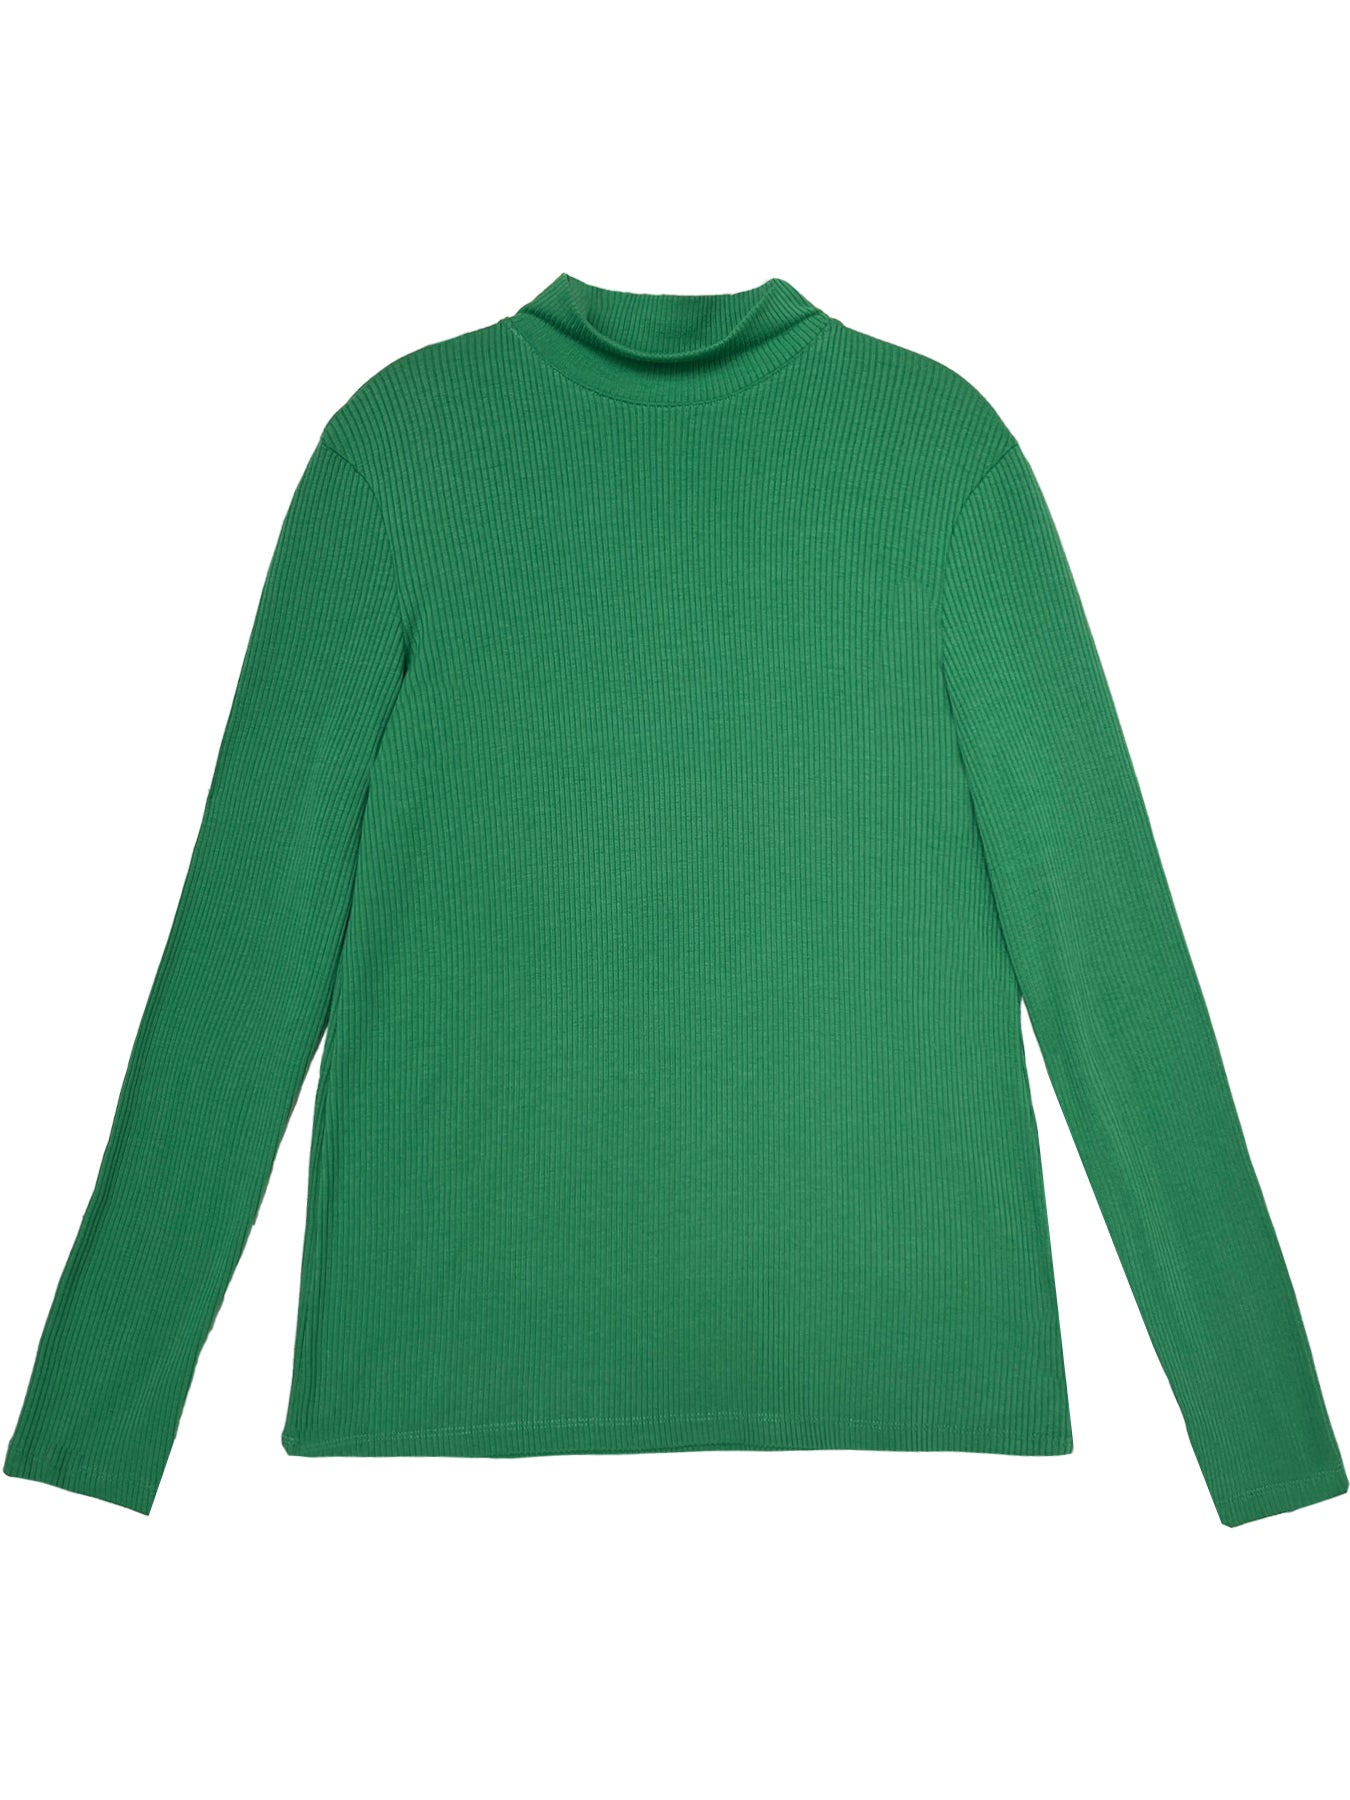 IDA tee Green Rib - Lesley Evers-22W45-1-basics-long sleeve